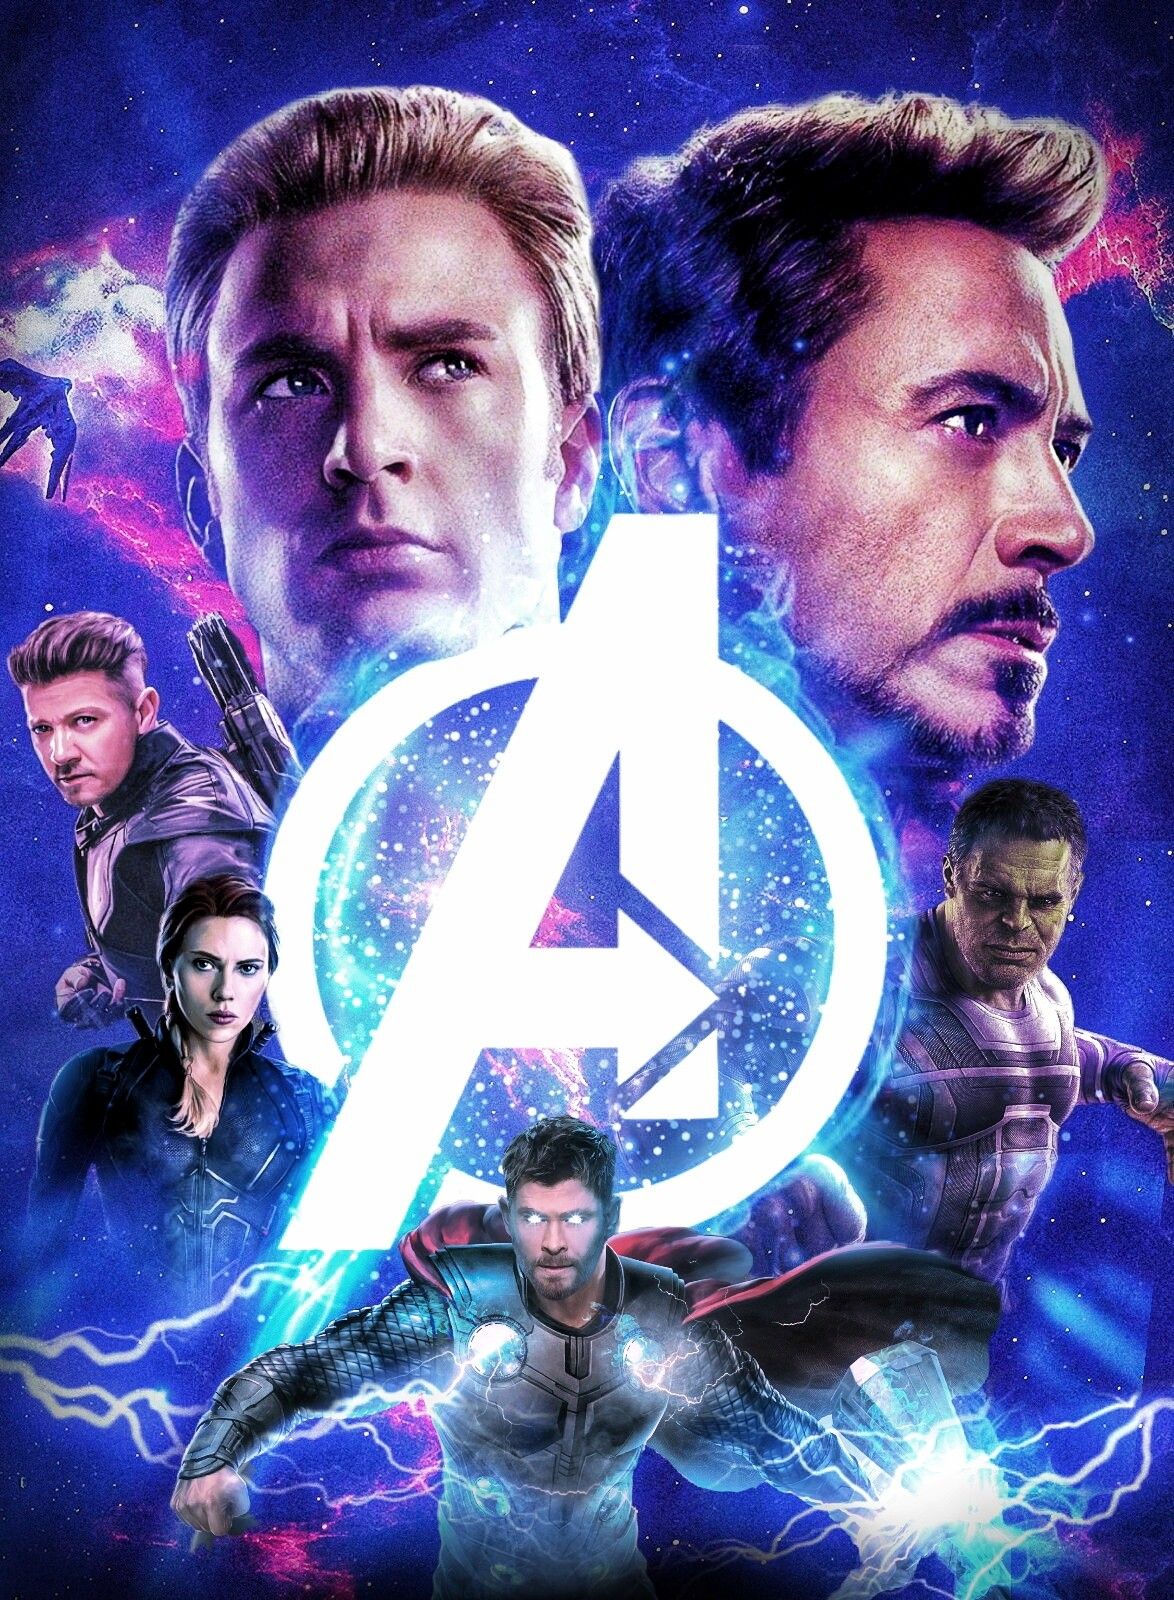 Avengers endgame original six avengers, captain